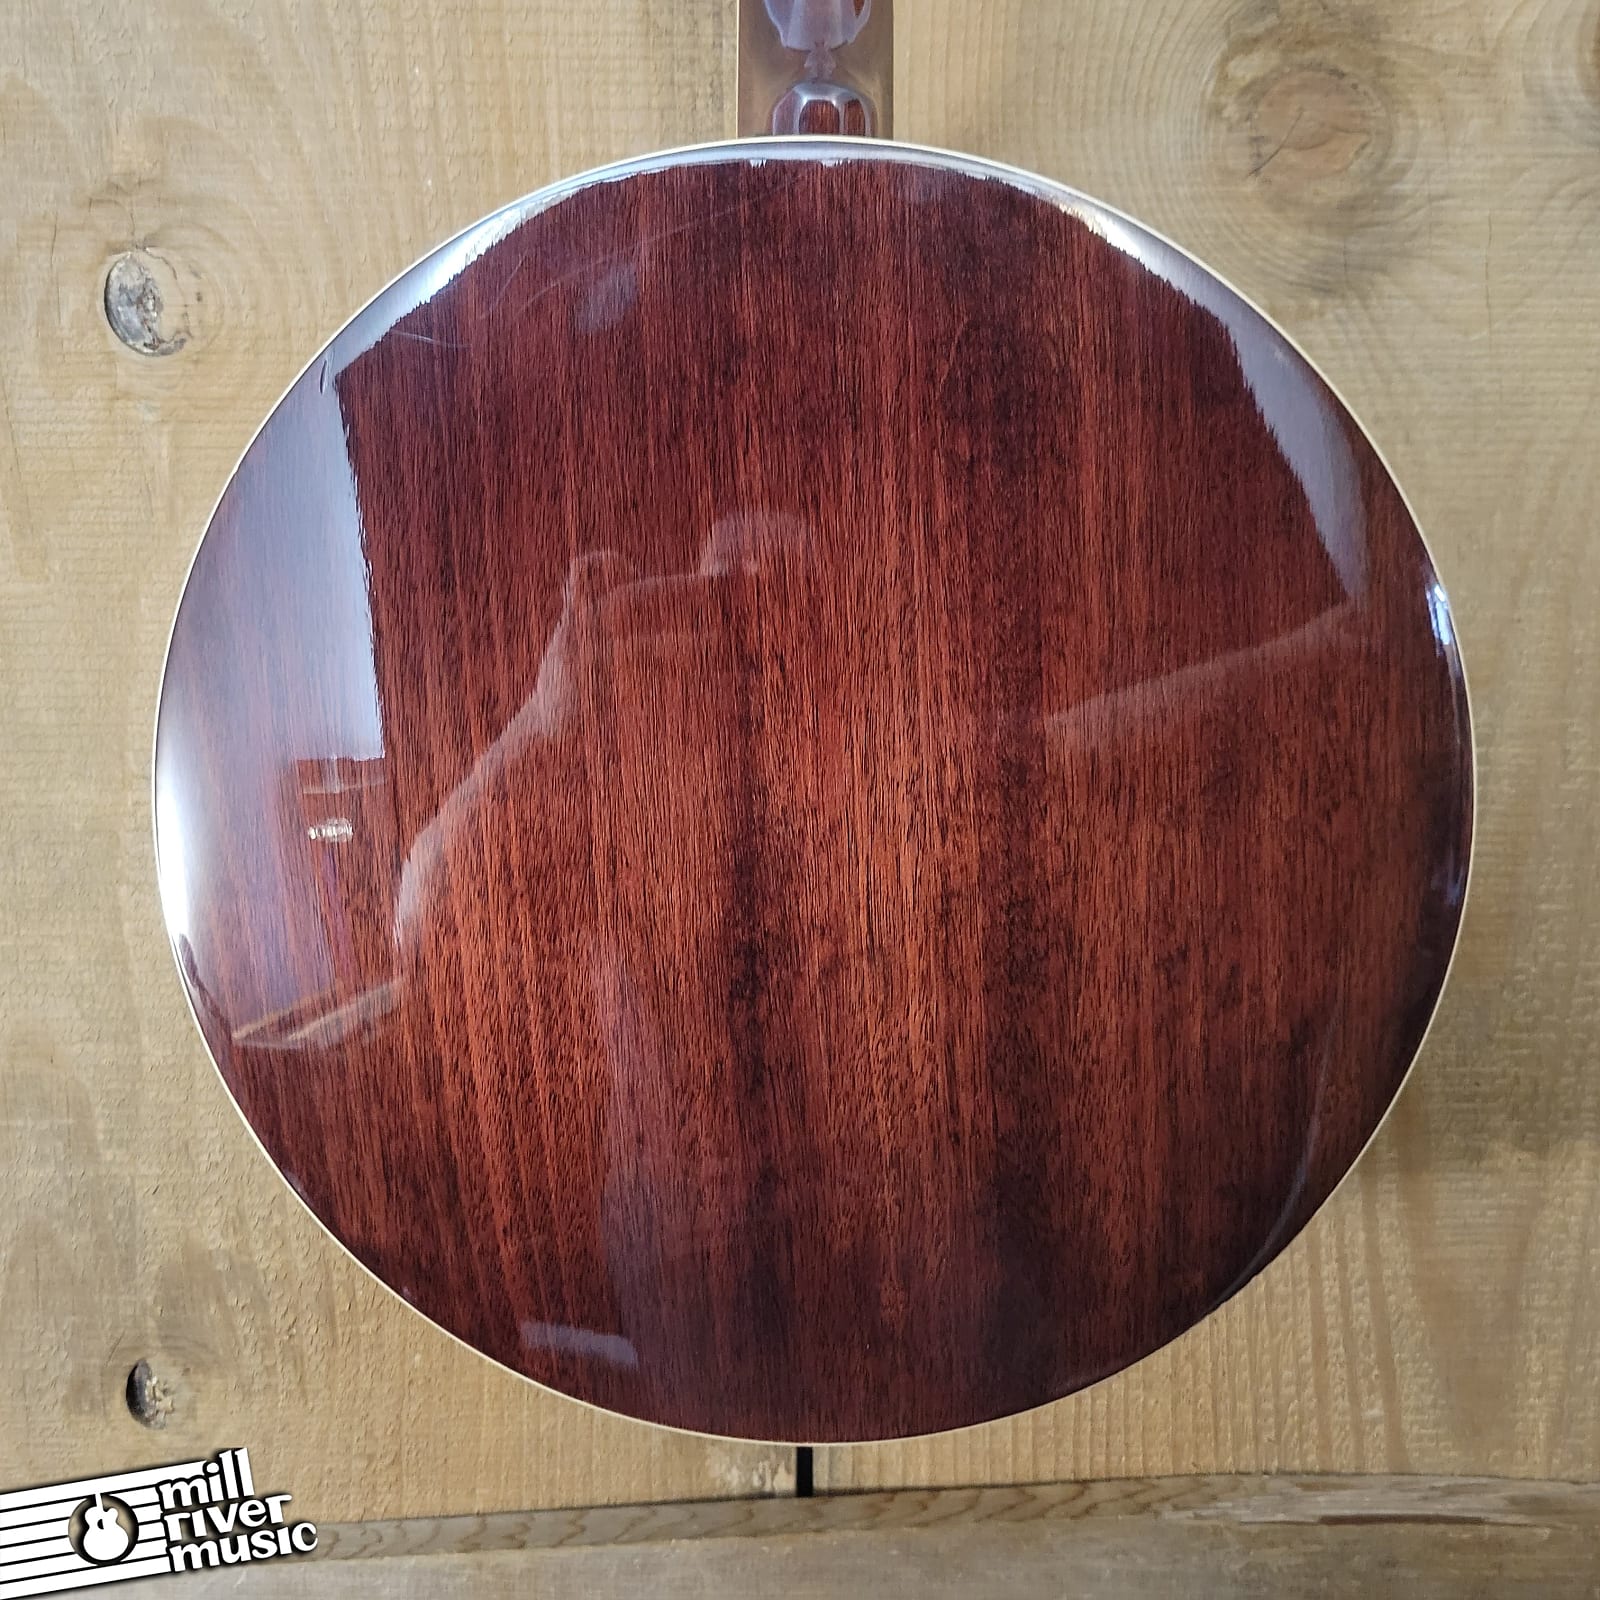 Fender Concert Tone 54 Banjo Used